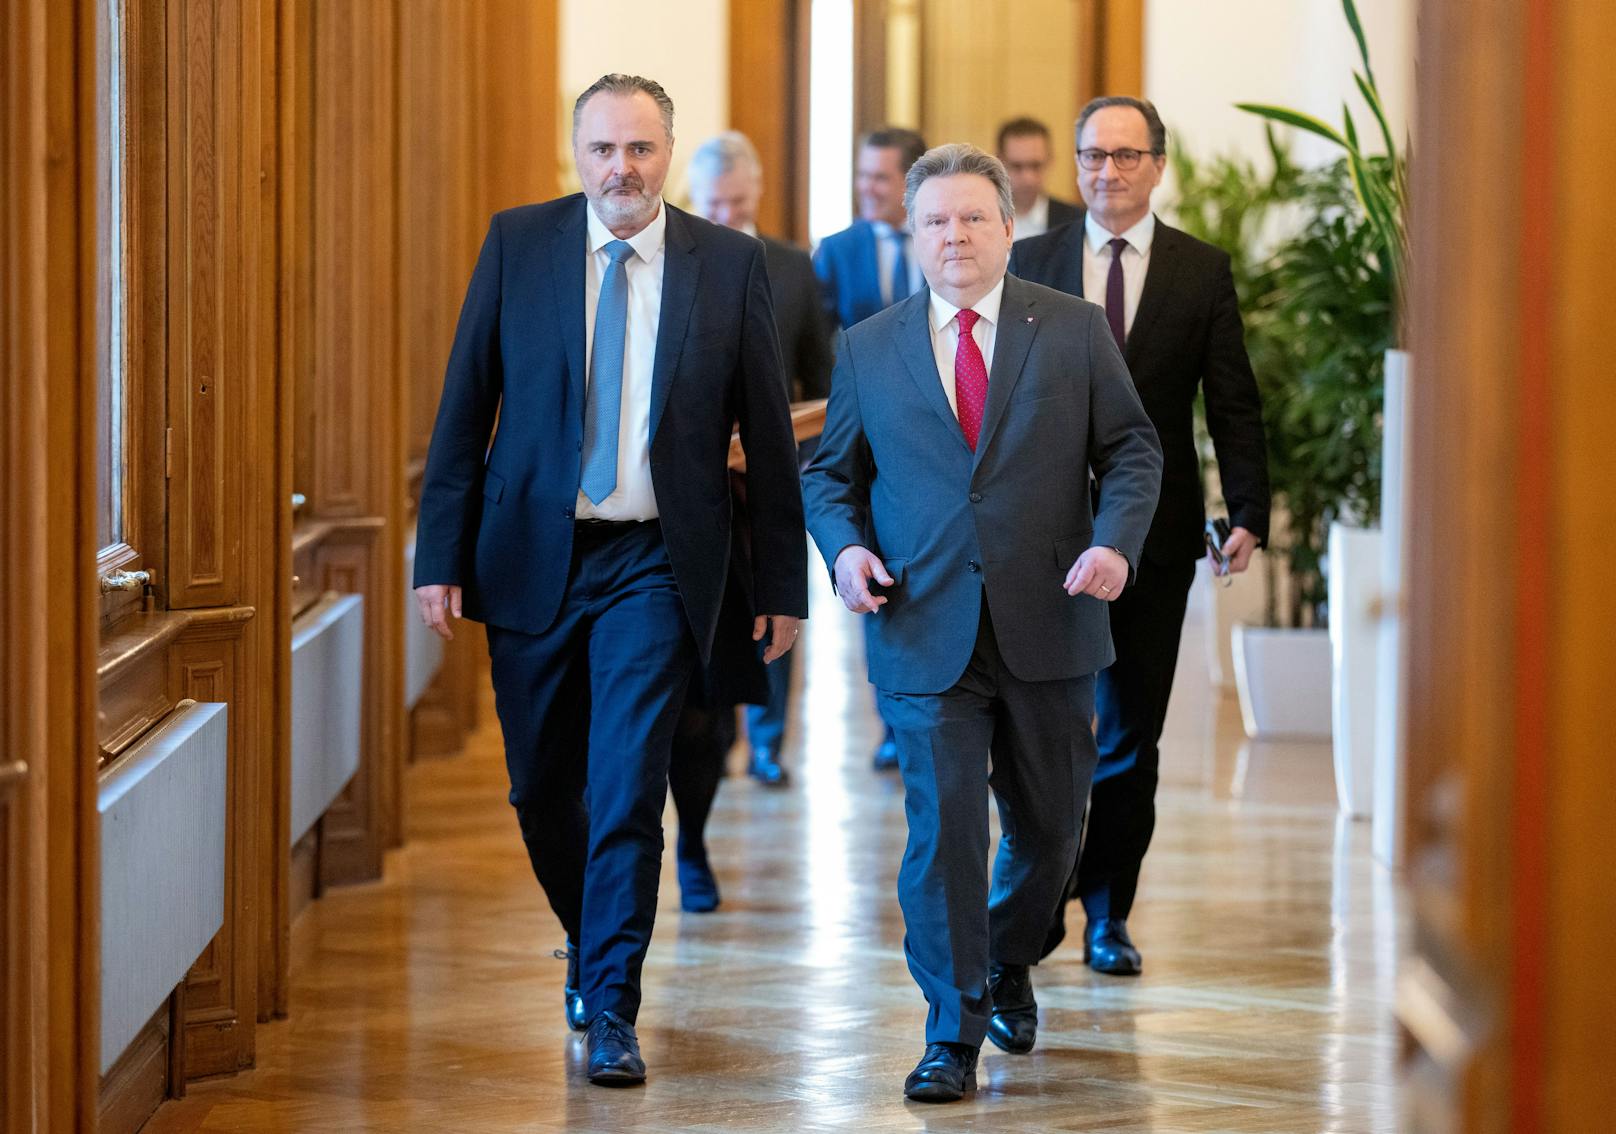 SPÖ-Showdown – Doskozil will auf Ludwig zugehen